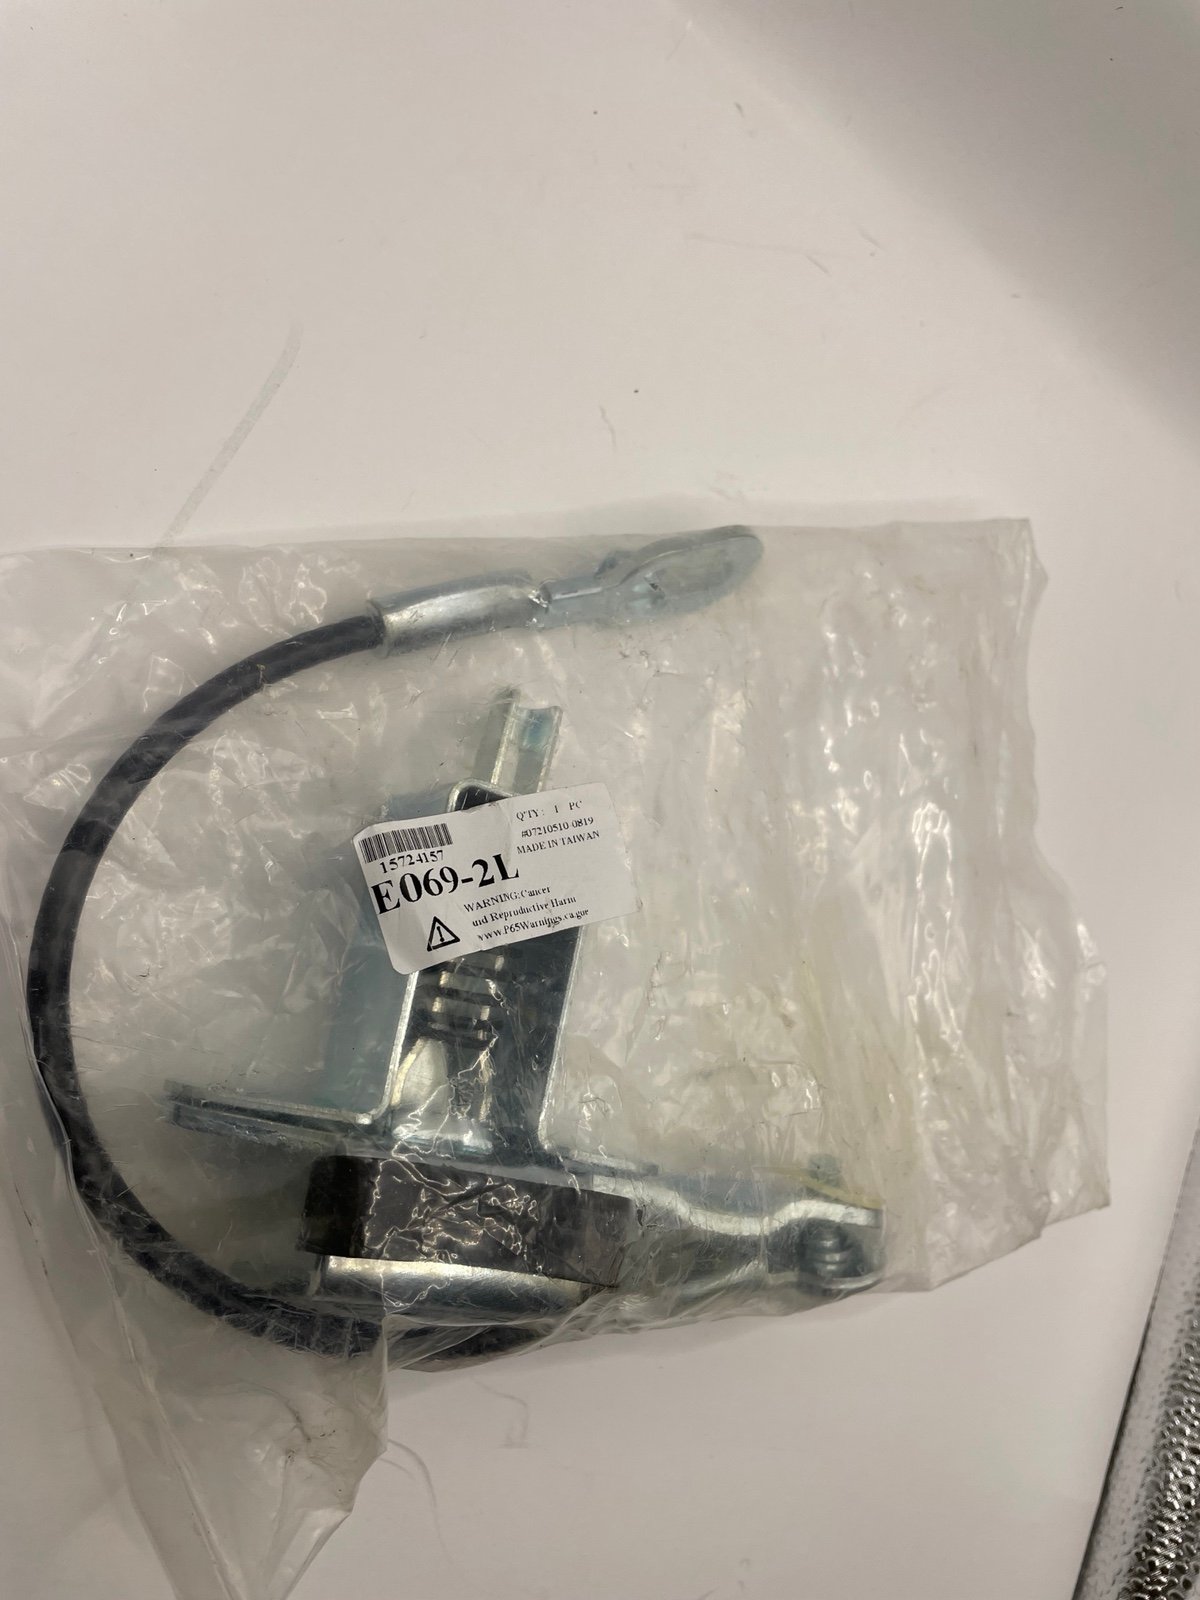 One GM Tailgate Lock Actuator Latch Release E069-2L aBKhERlFK